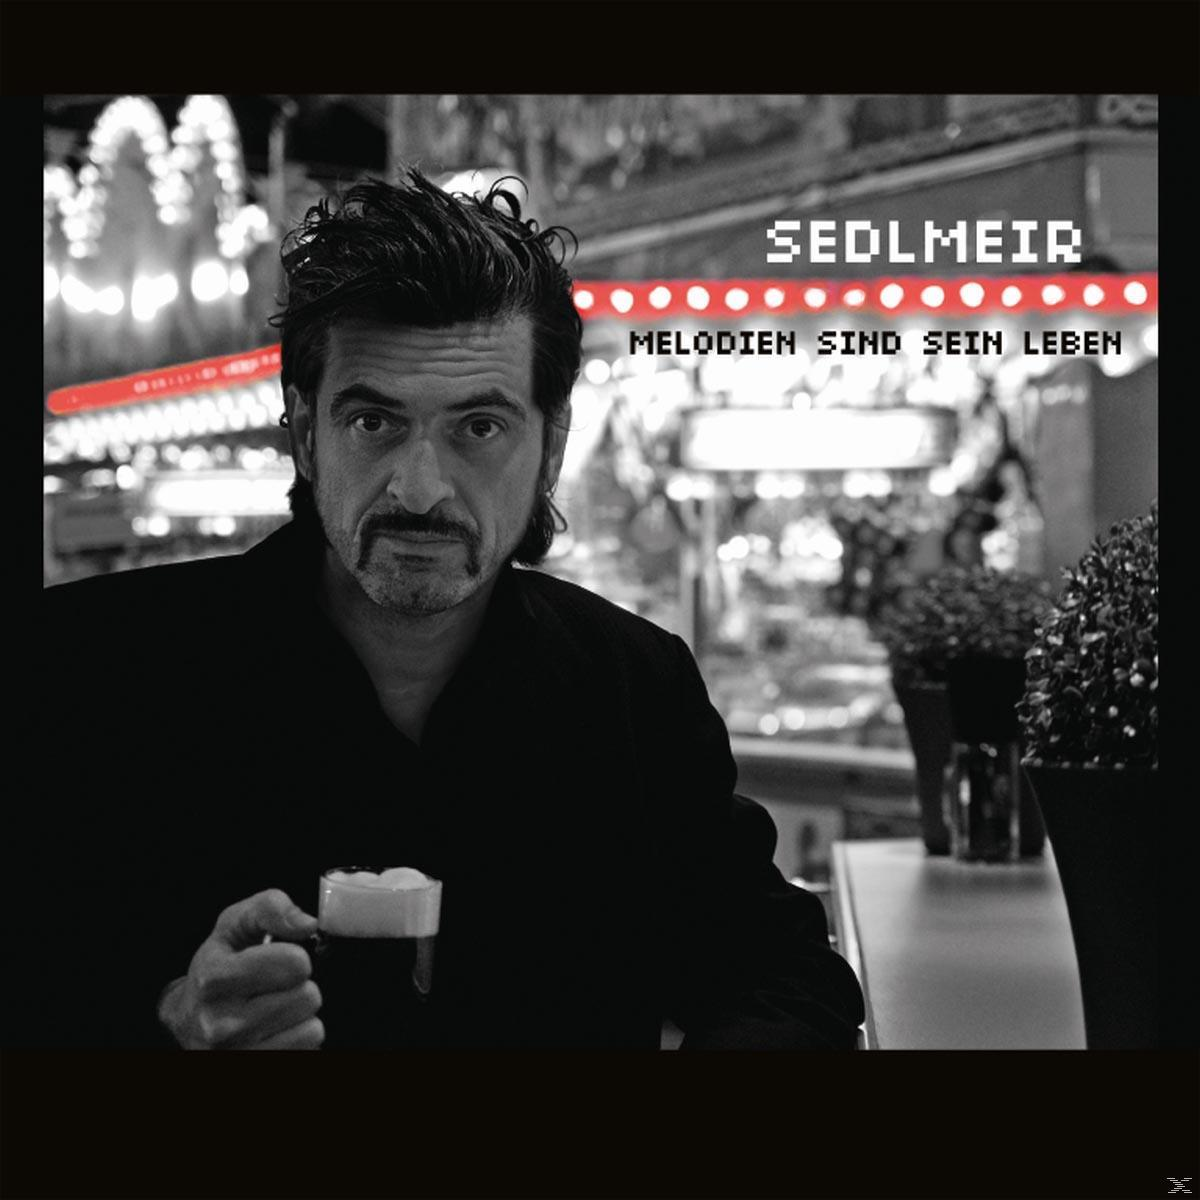 Leben - (CD) Sind Melodien Sein - Sedlmeir